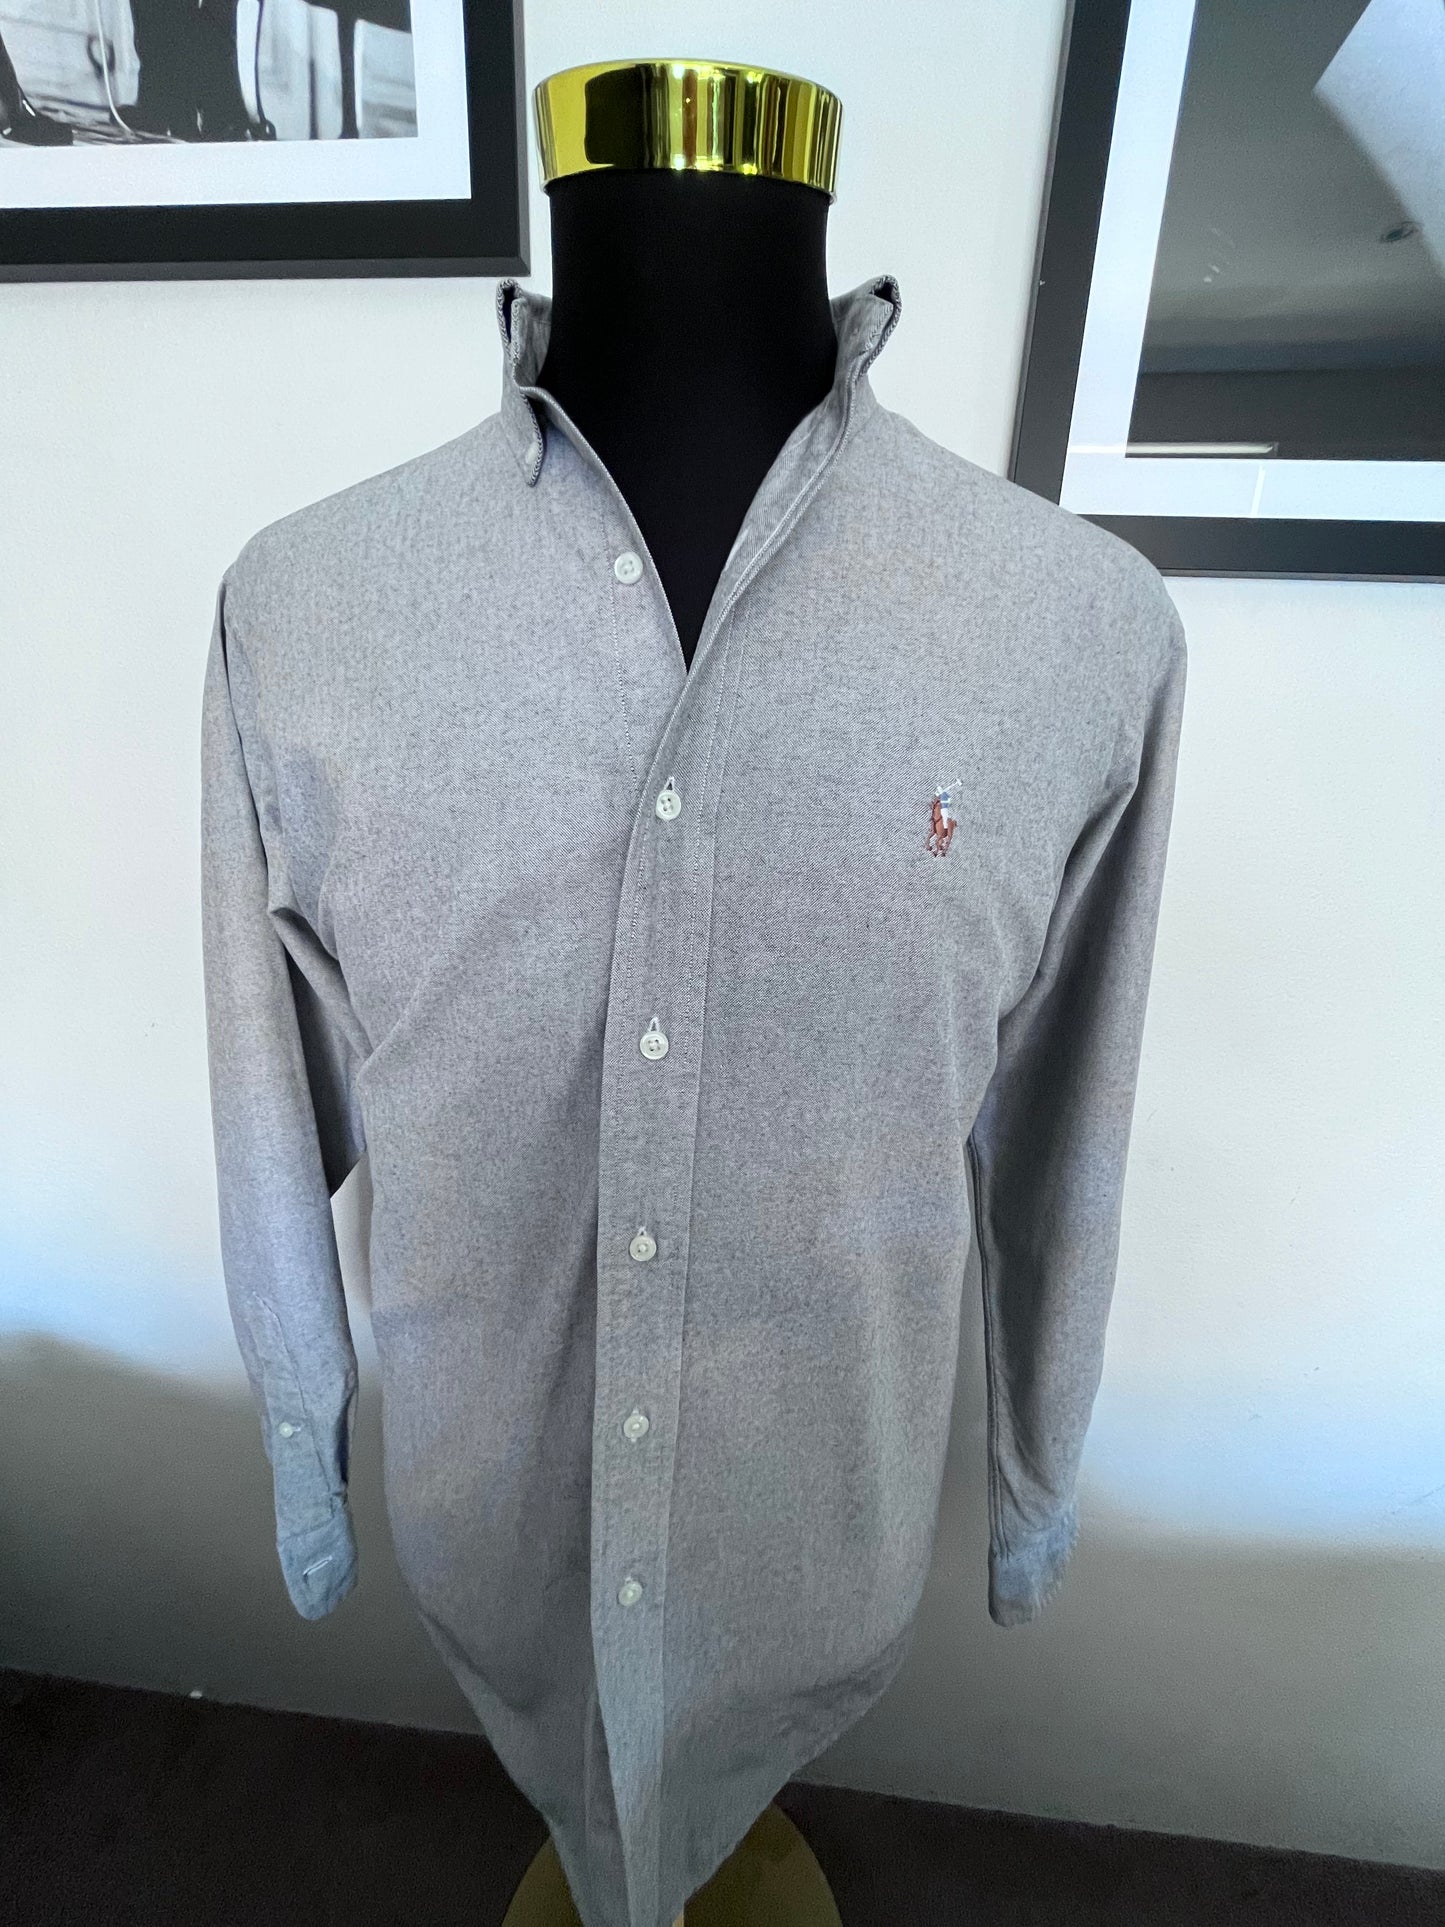 Ralph Lauren 100% Cotton Grey Button Down Shirt Size L Classic Fit 15.5/39